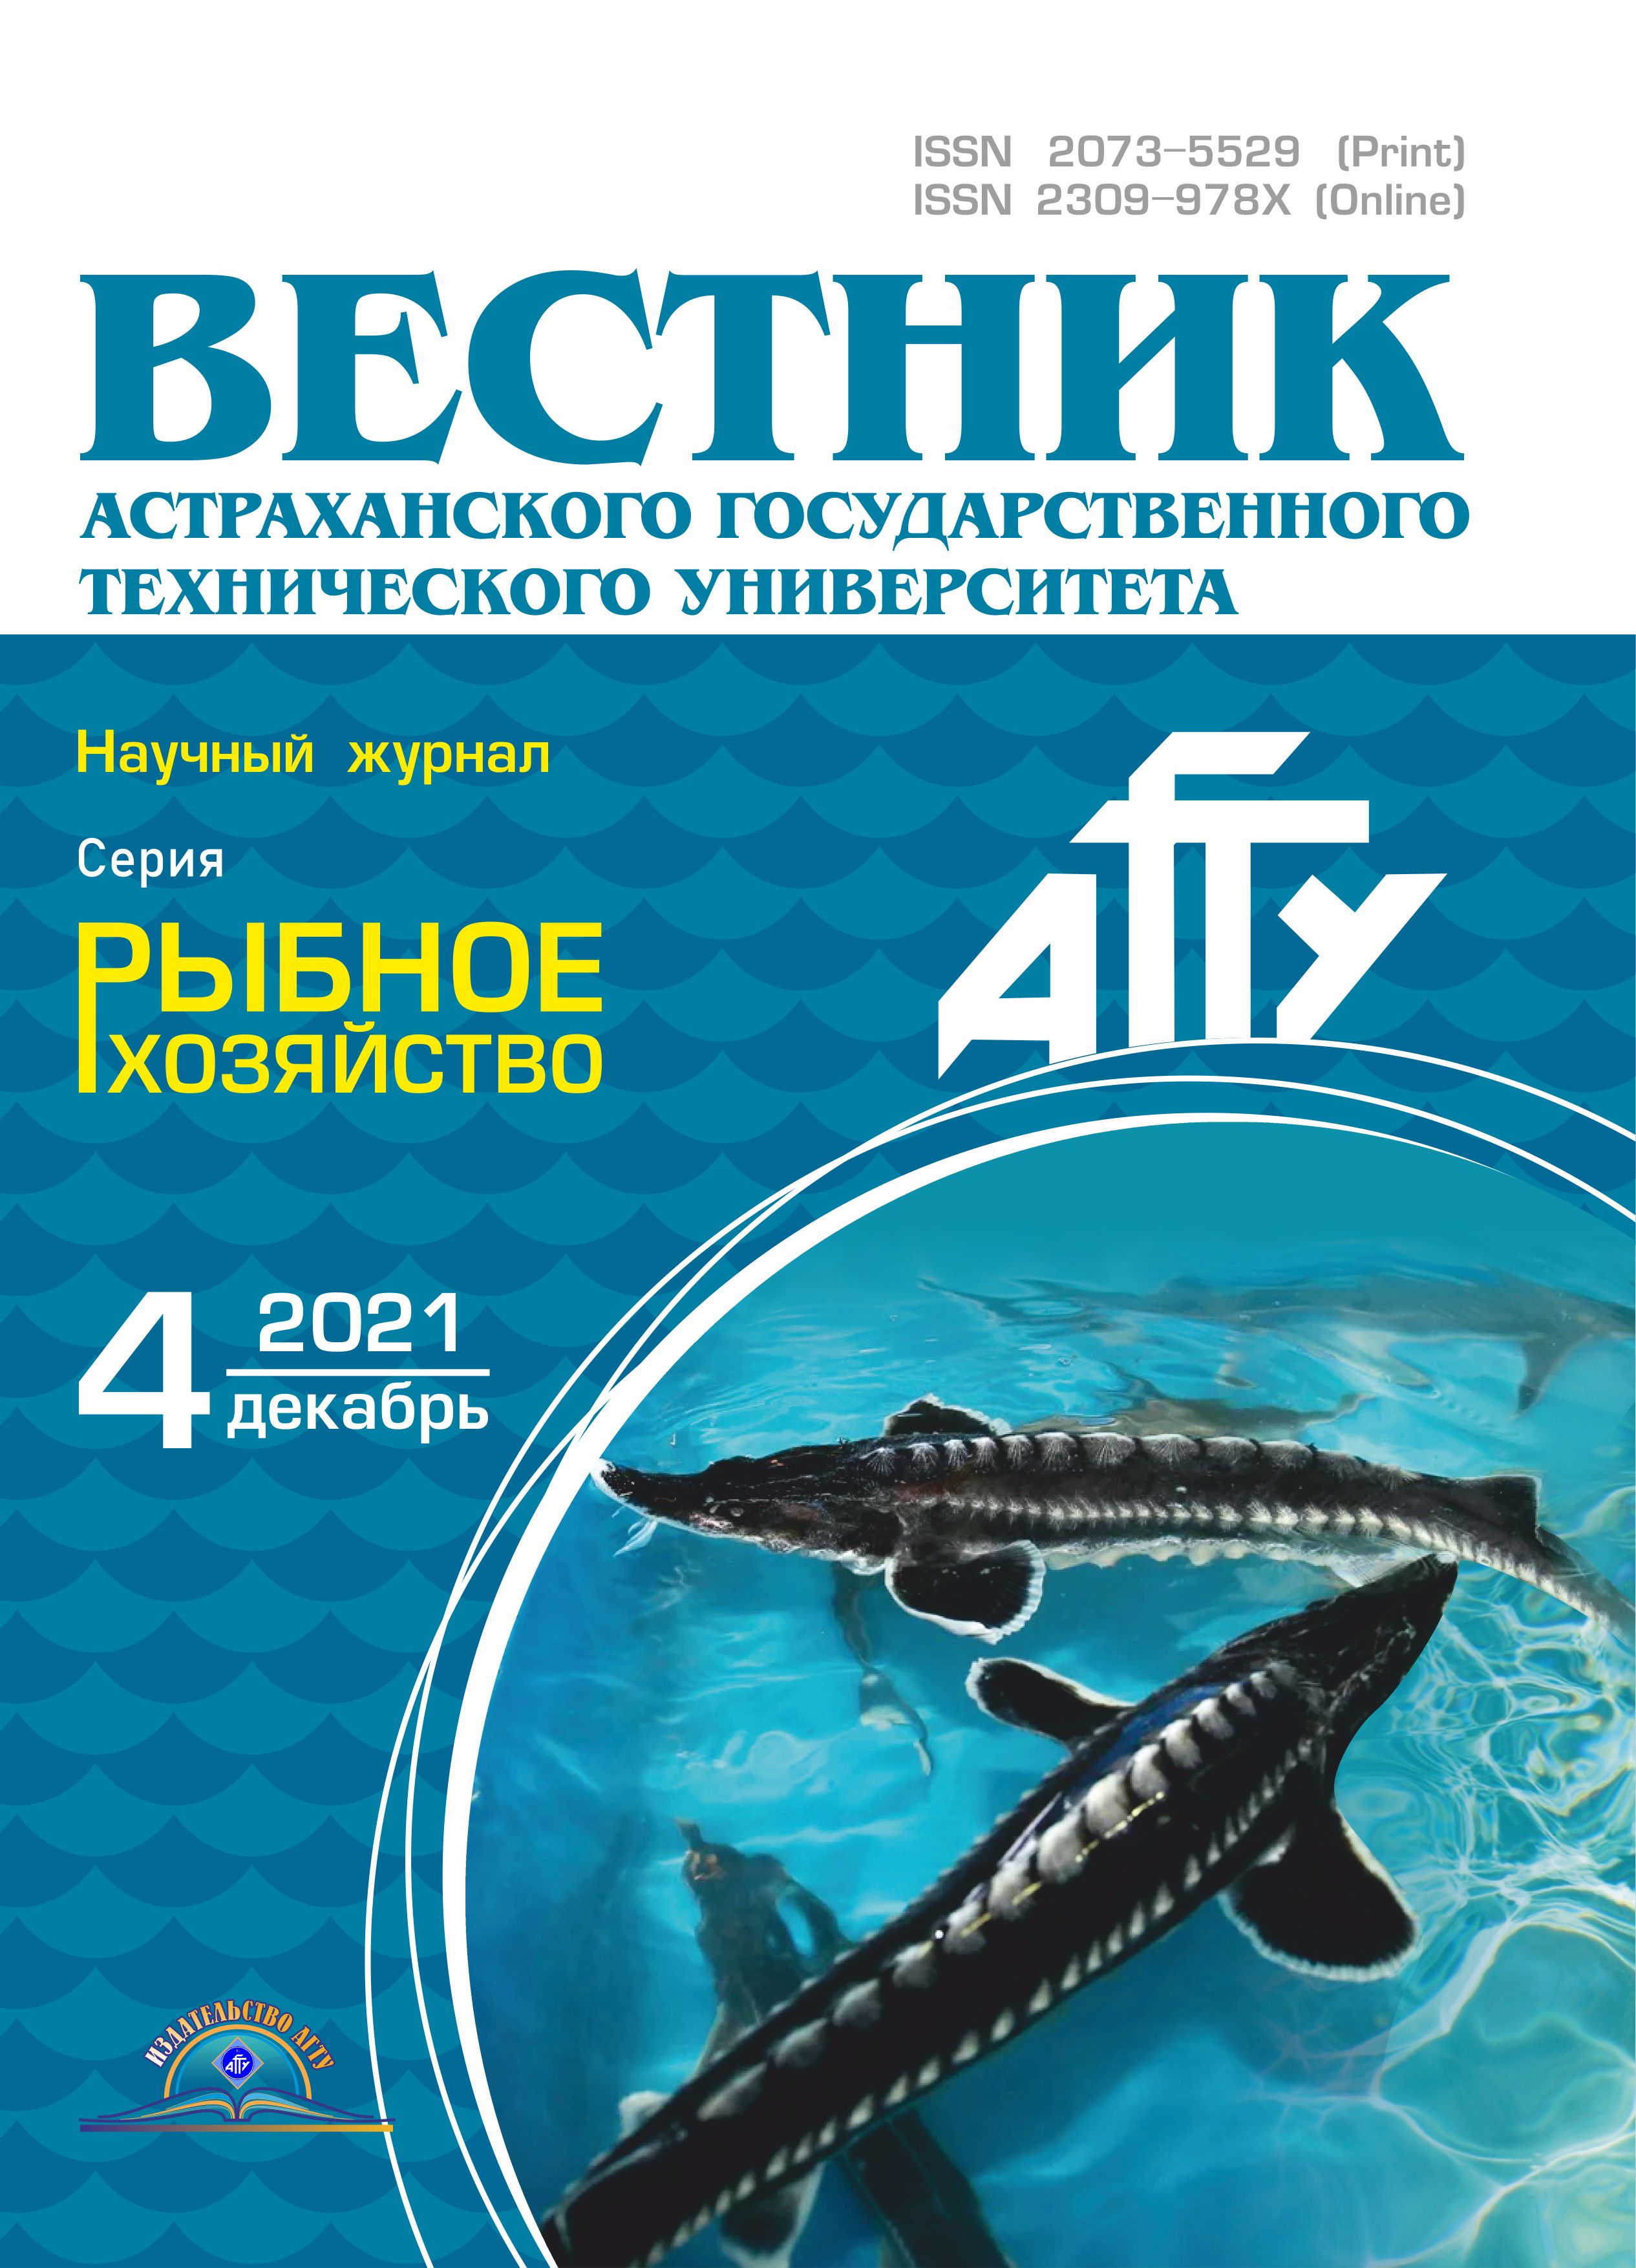             Высокотехнологичные приемы переработки рыбного сырья,  выращенного в Астраханской области
    